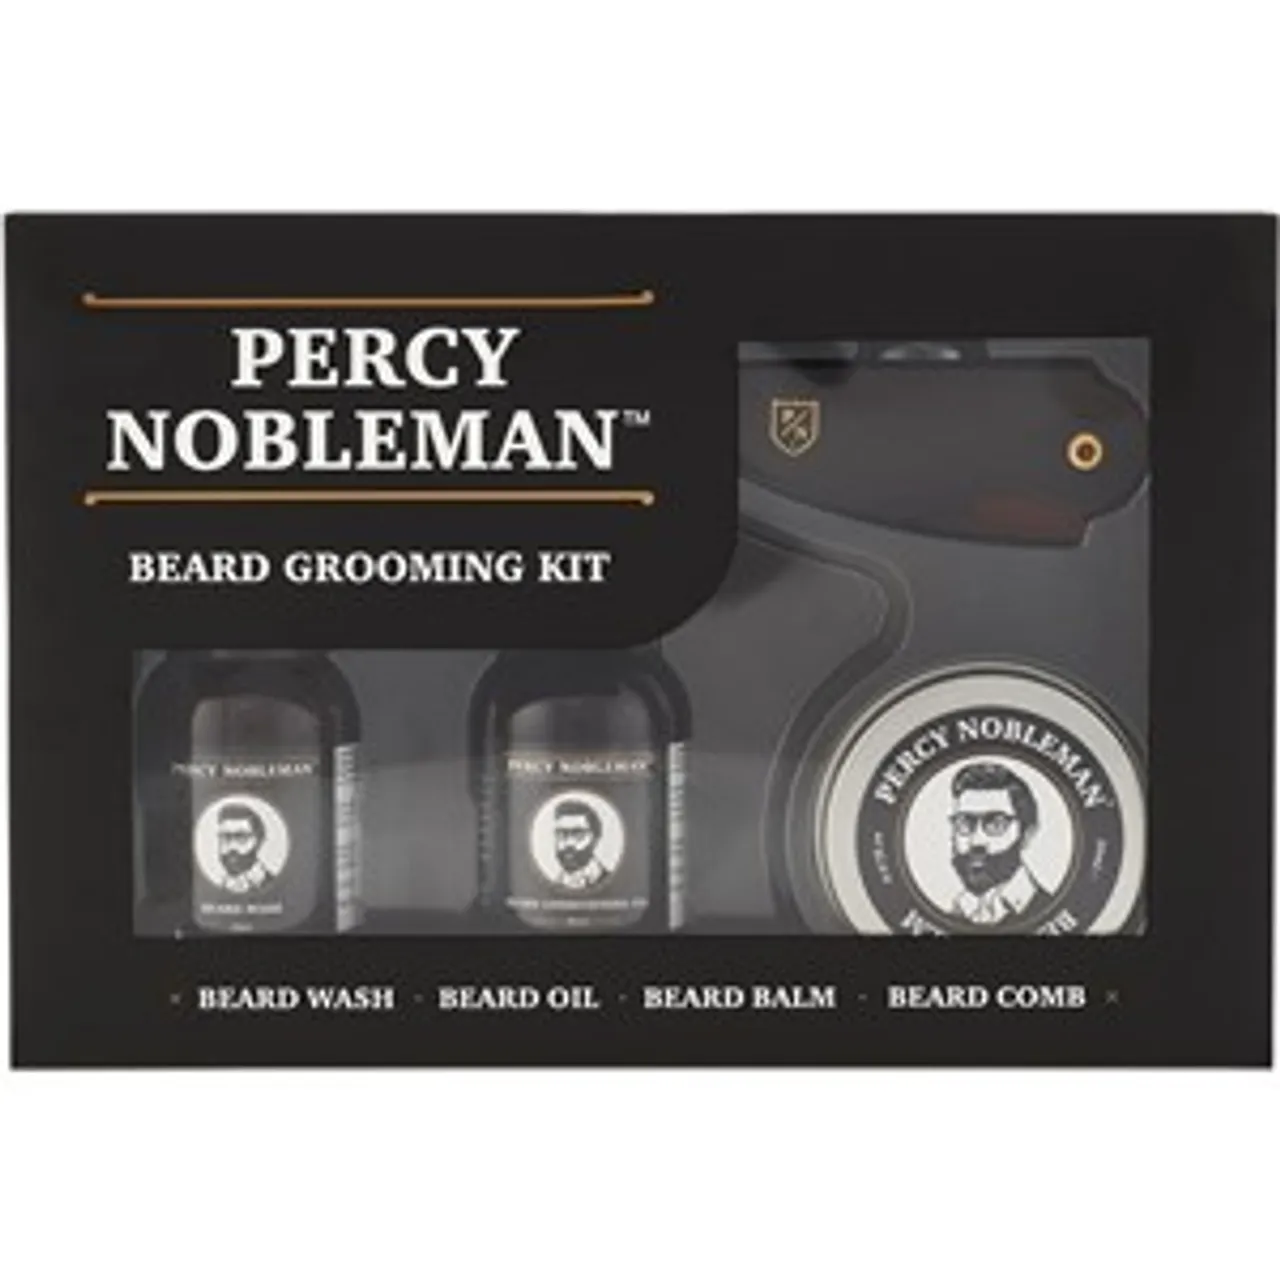 Percy Nobleman Beard Grooming Kit Male 1 Stk.